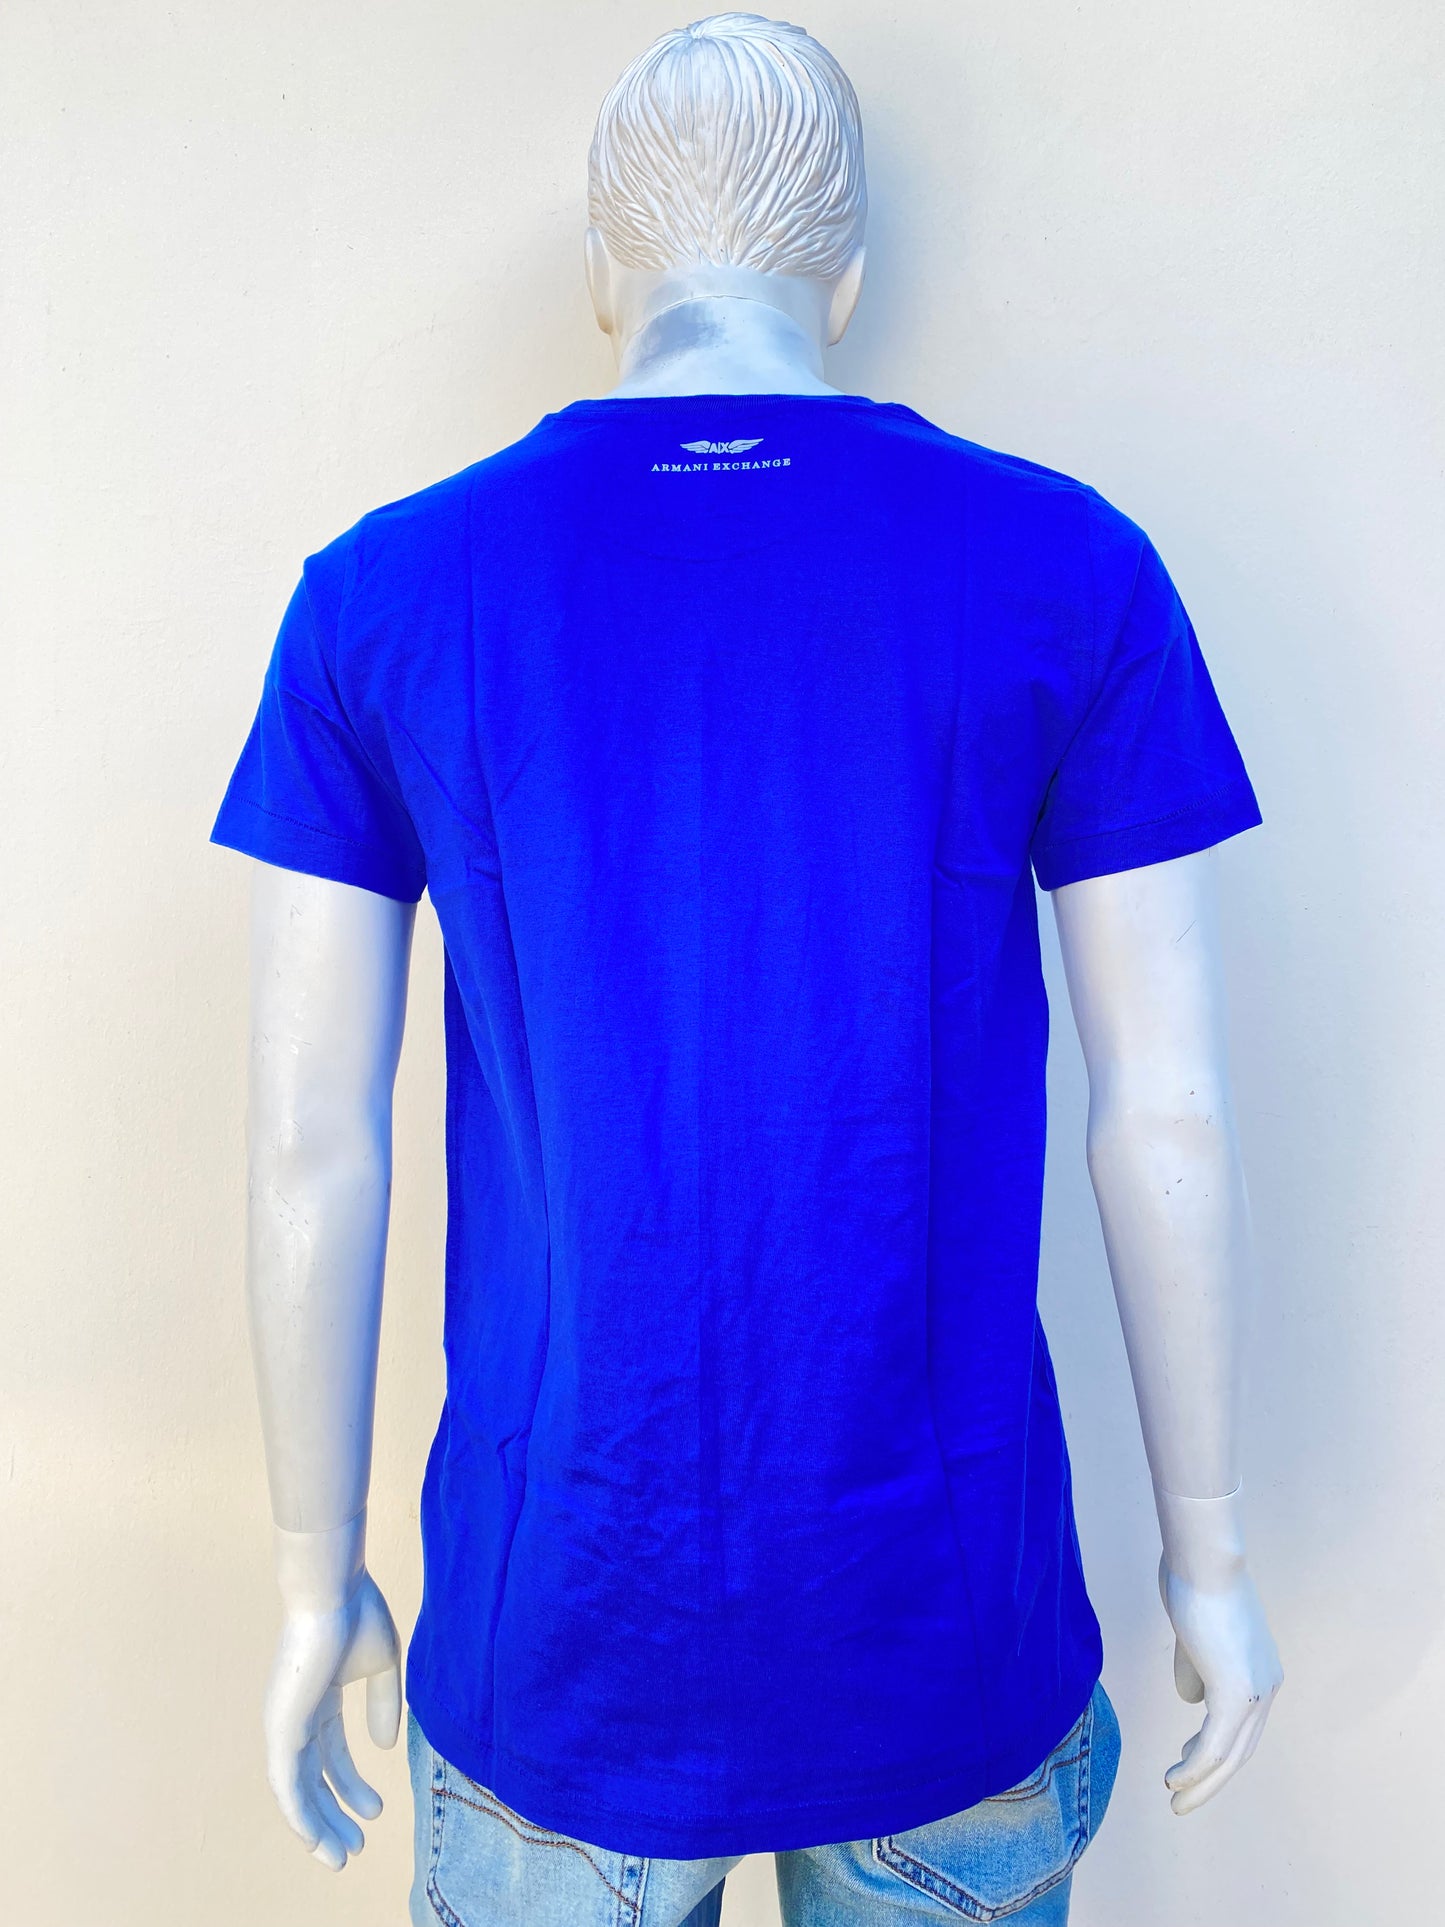 T-shirt Armani Exchange original, azul con logotipo de la marca AX en blanco.